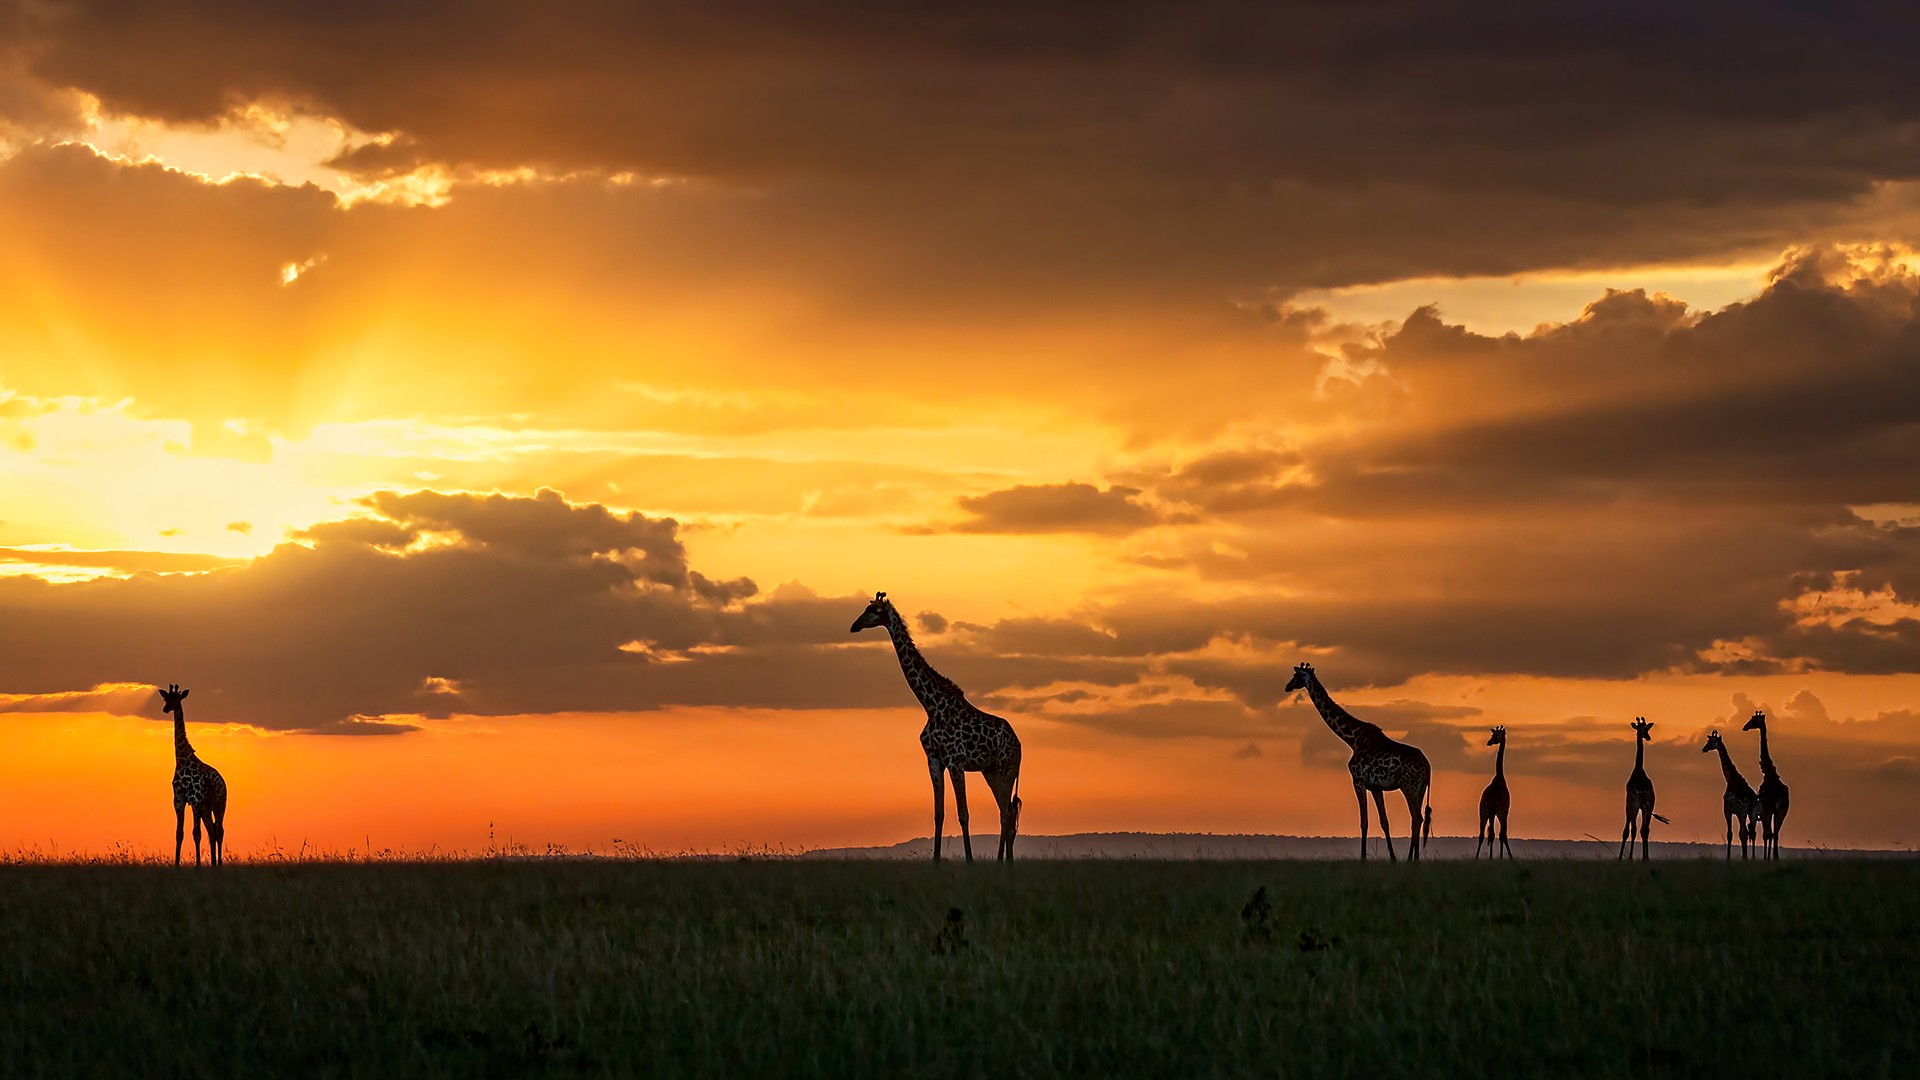 Animals Mammals Giraffes Landscape Orange Sky Africa 1920x1080